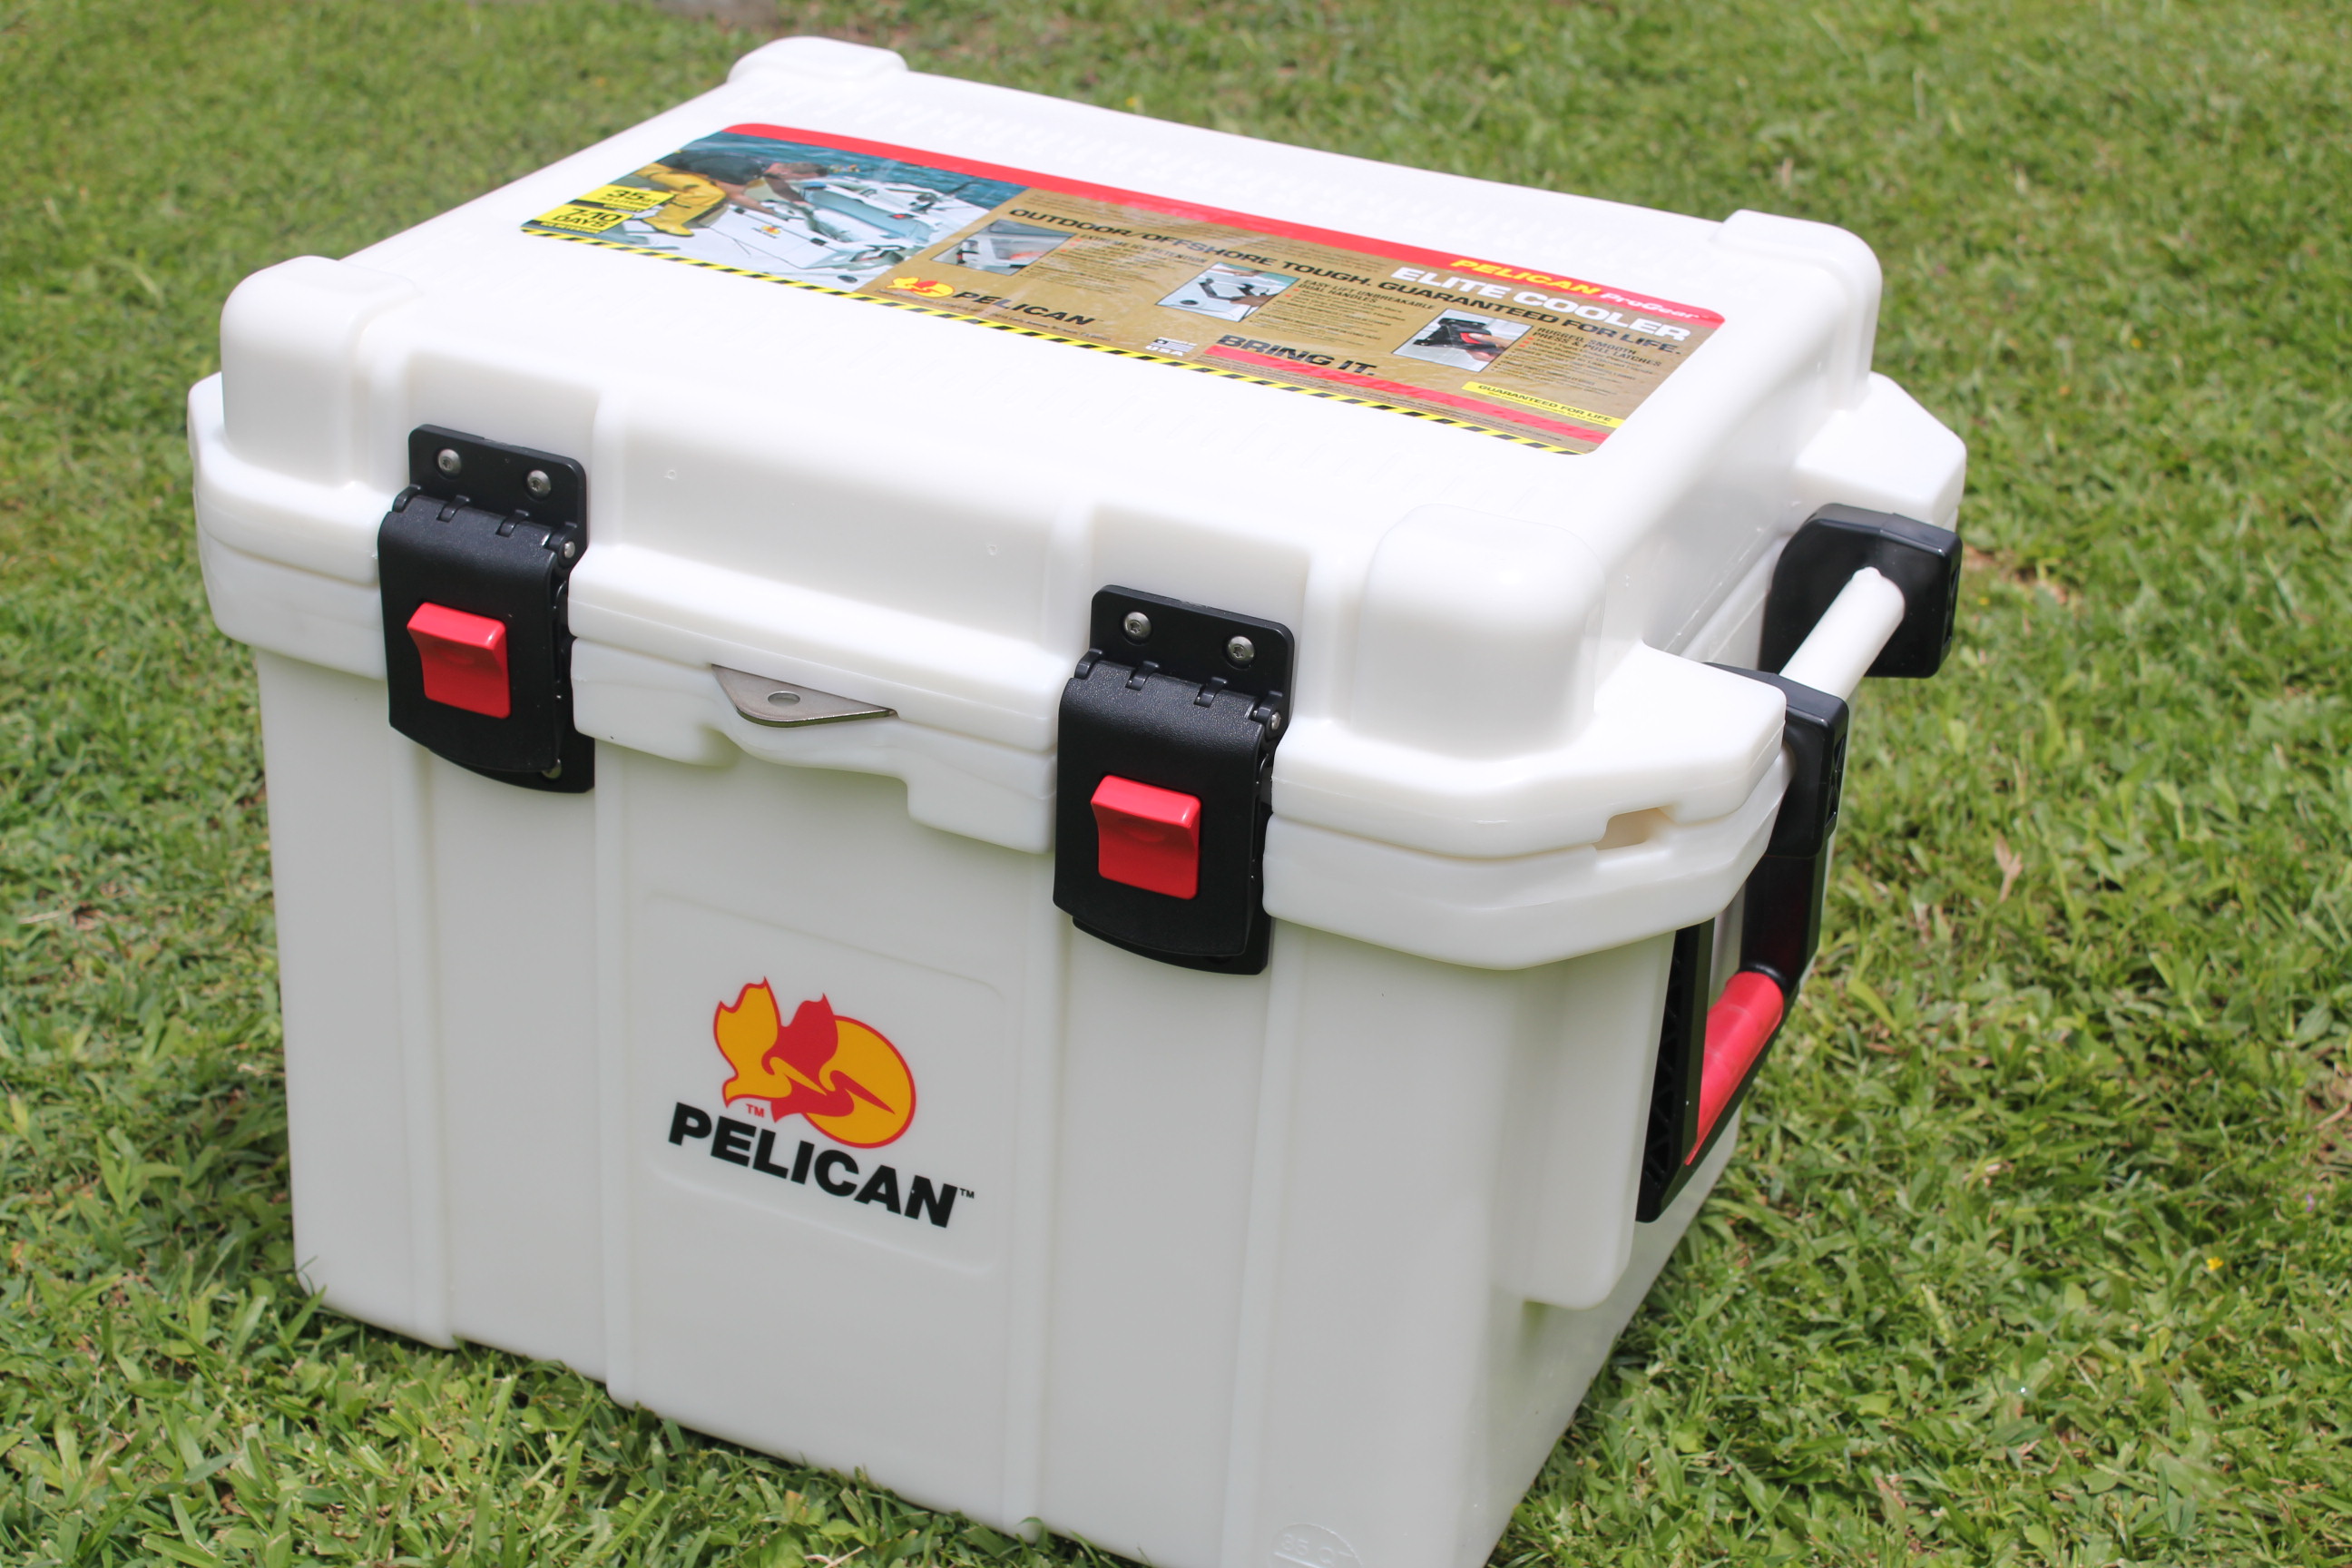 Reviews for Pelican 35 Qt. Elite Cooler